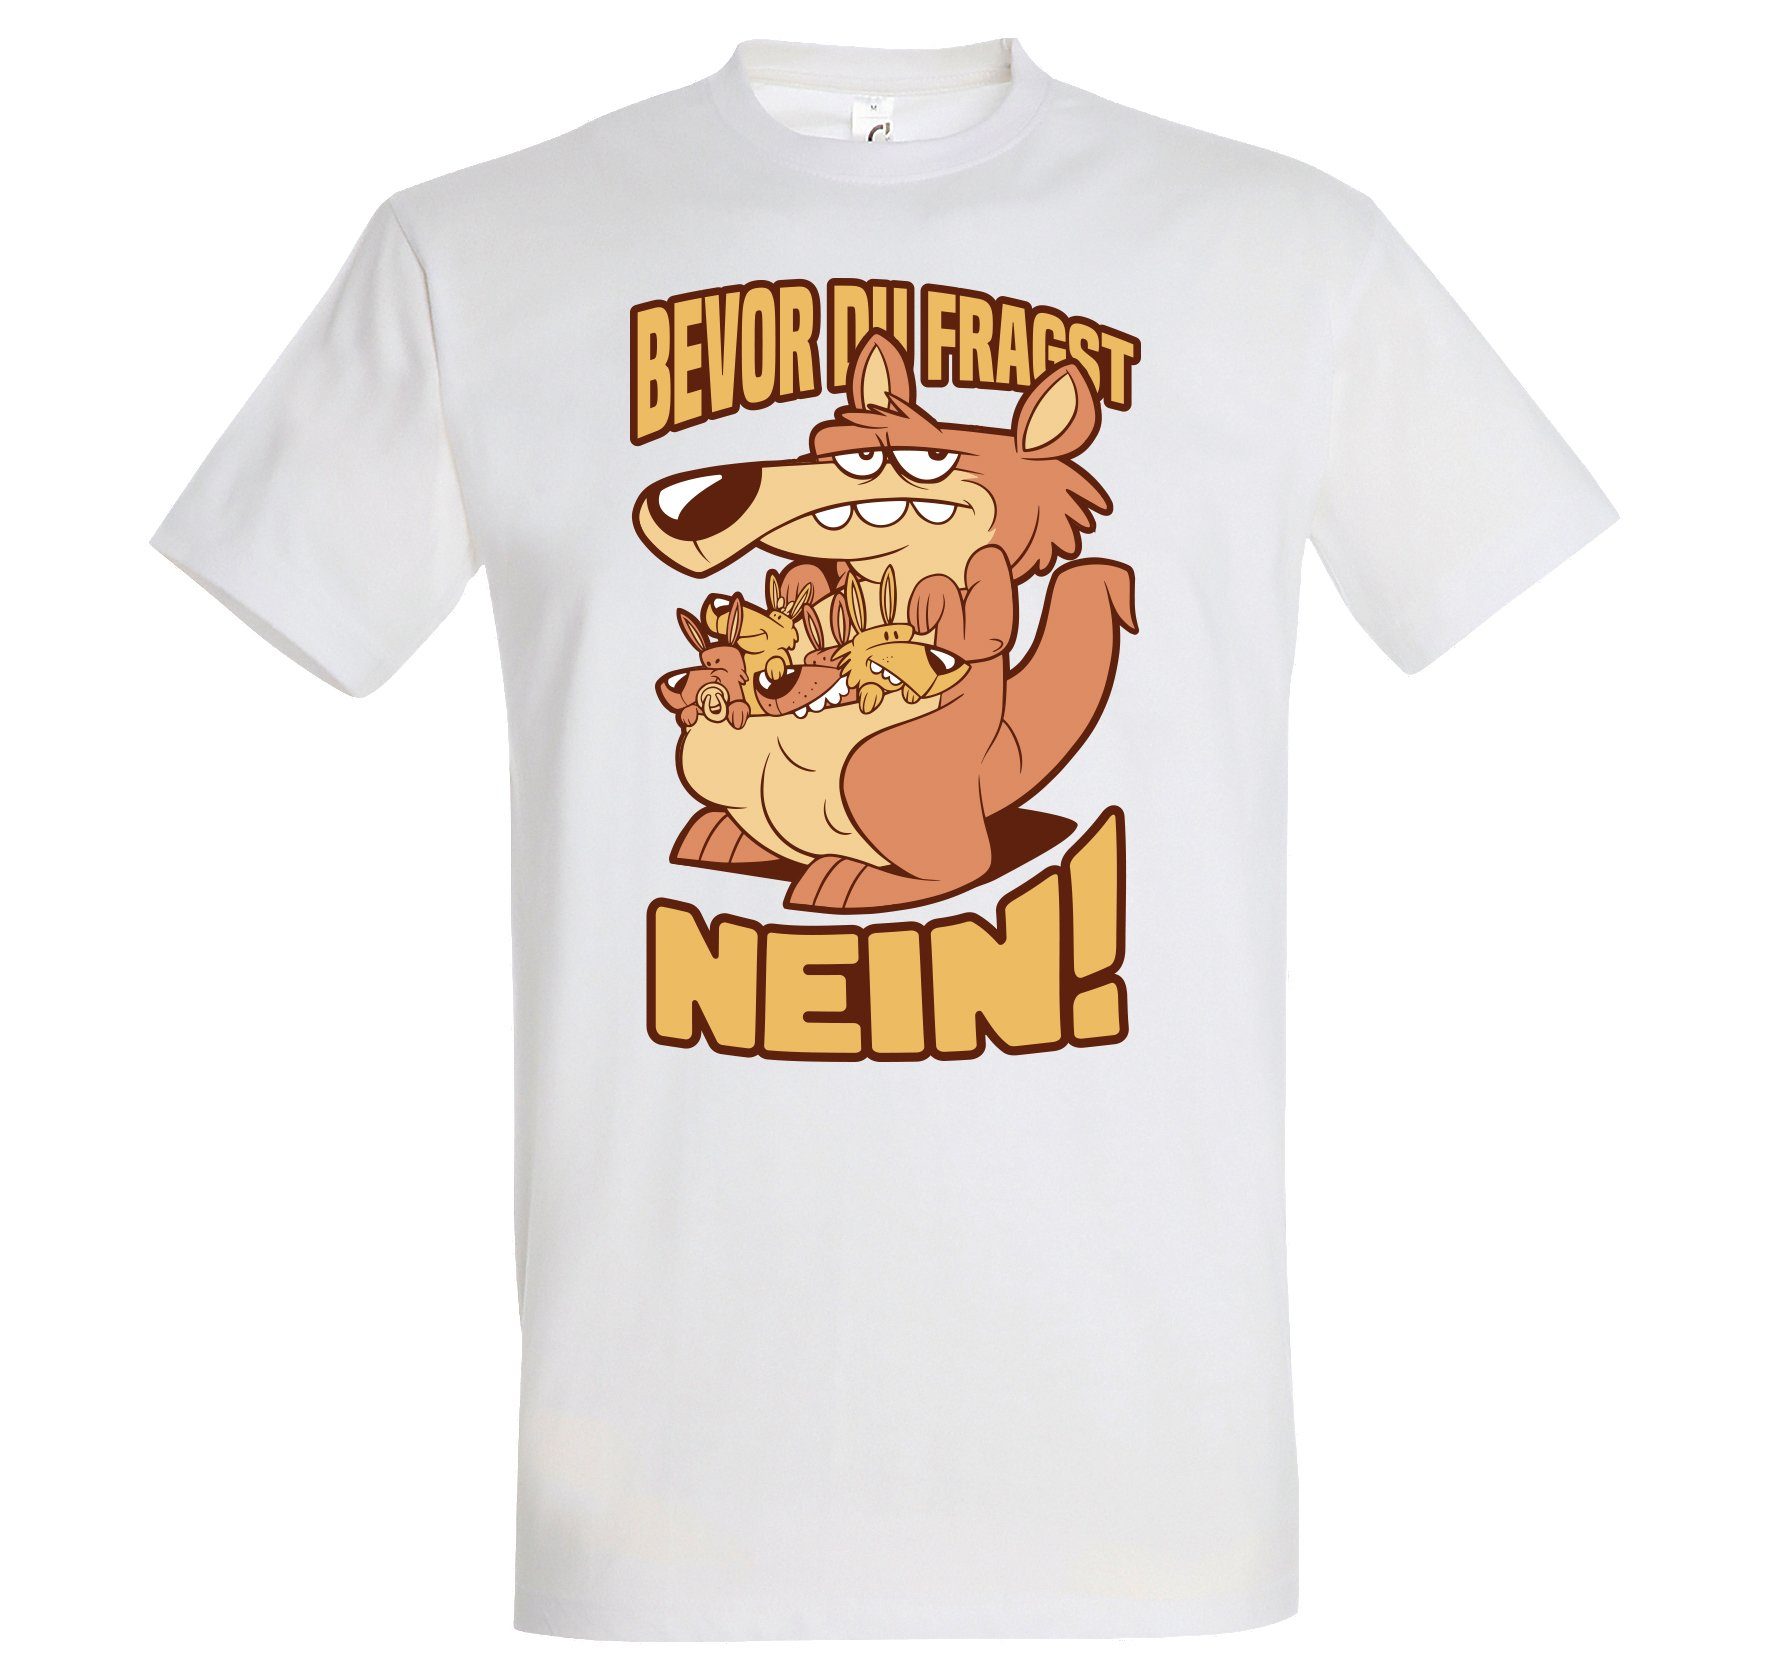 Designz FRAGST lustigem DU Print-Shirt Youth T-Shirt Spruch NEIN BEVOR mit Herren Weiß Aufdruck